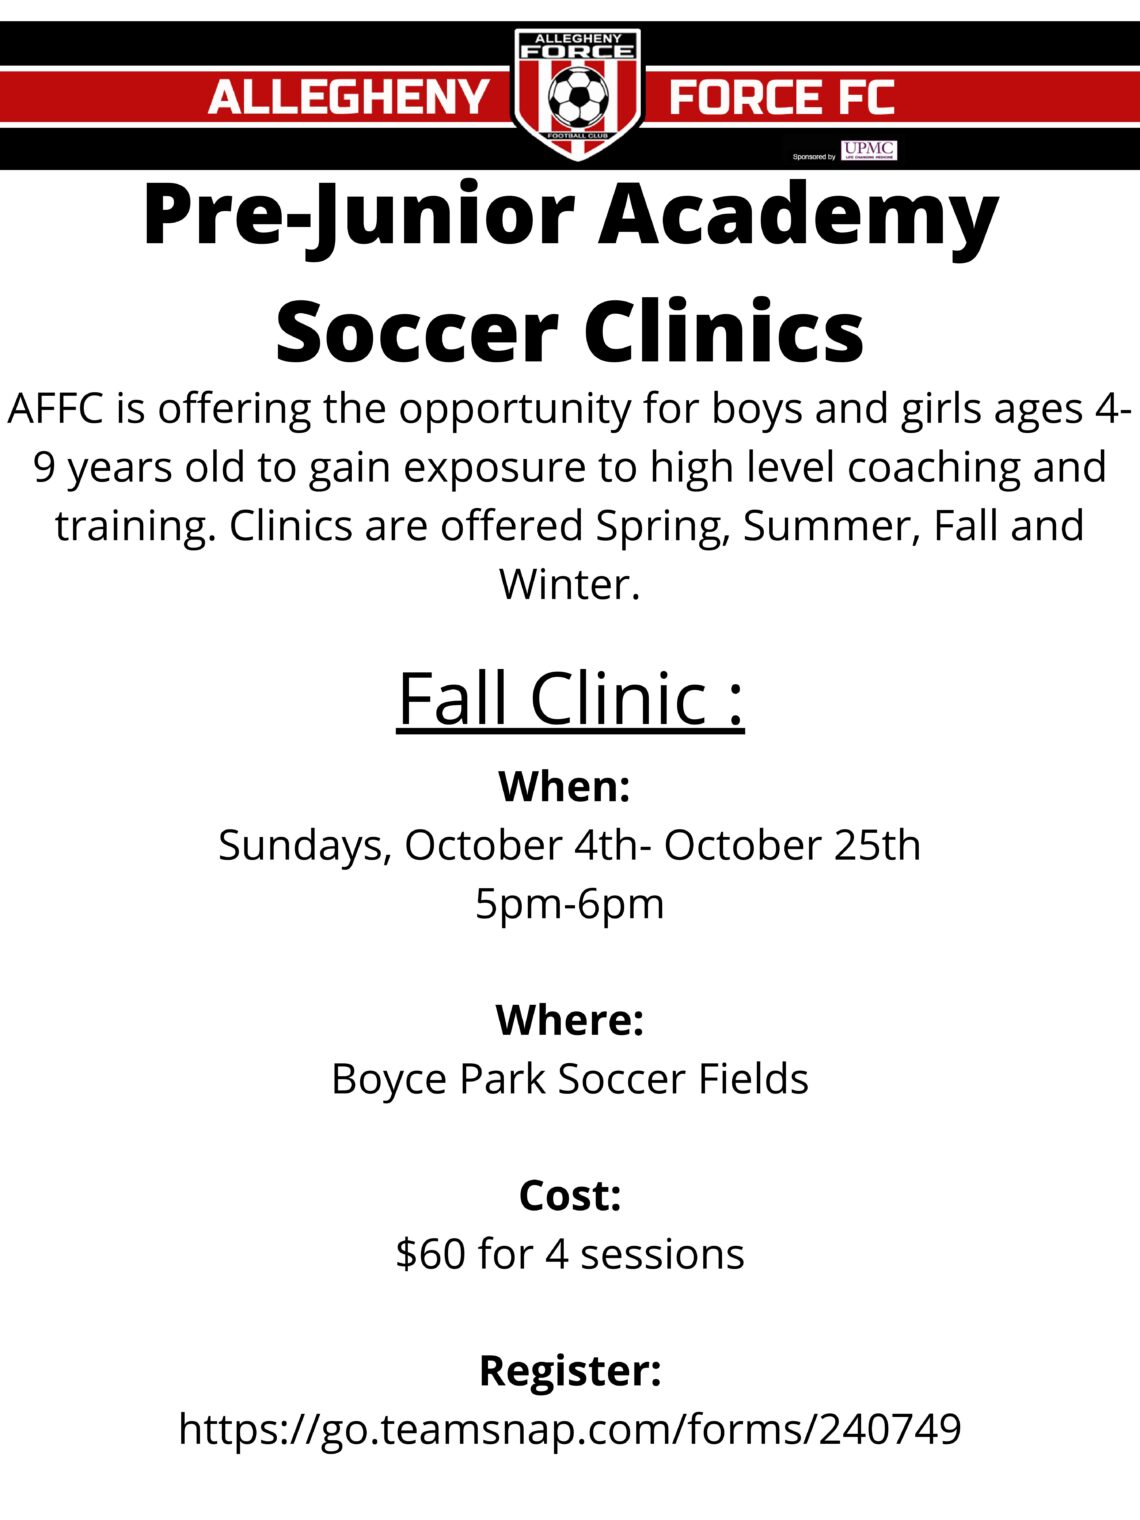 Pre-Junior Academy Soccer Clinics 3